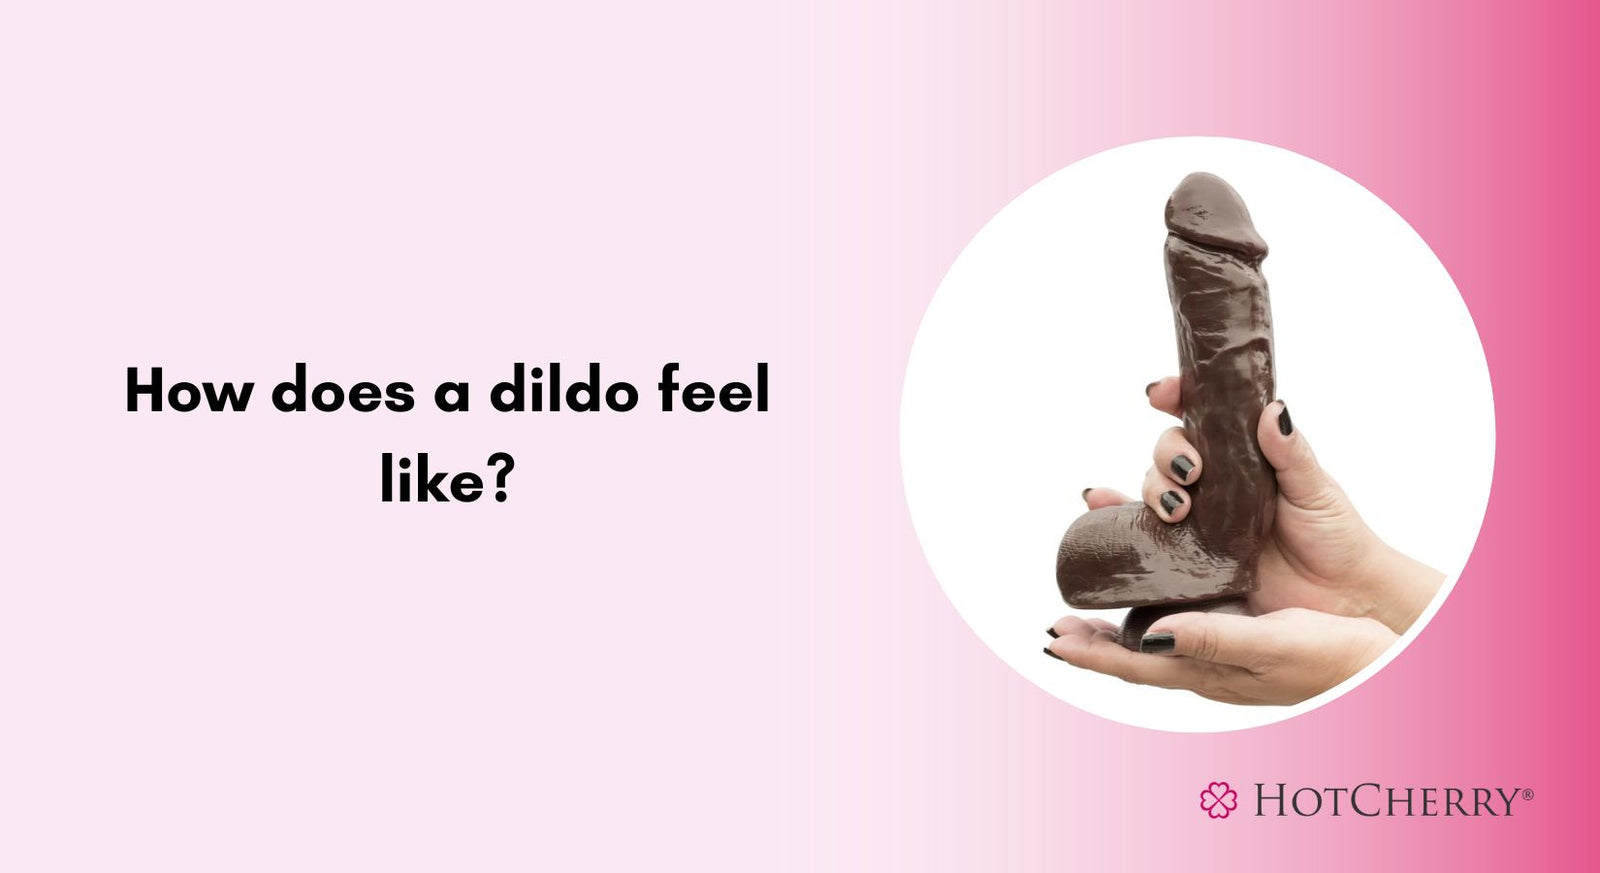 How Does a Dildo Feel?